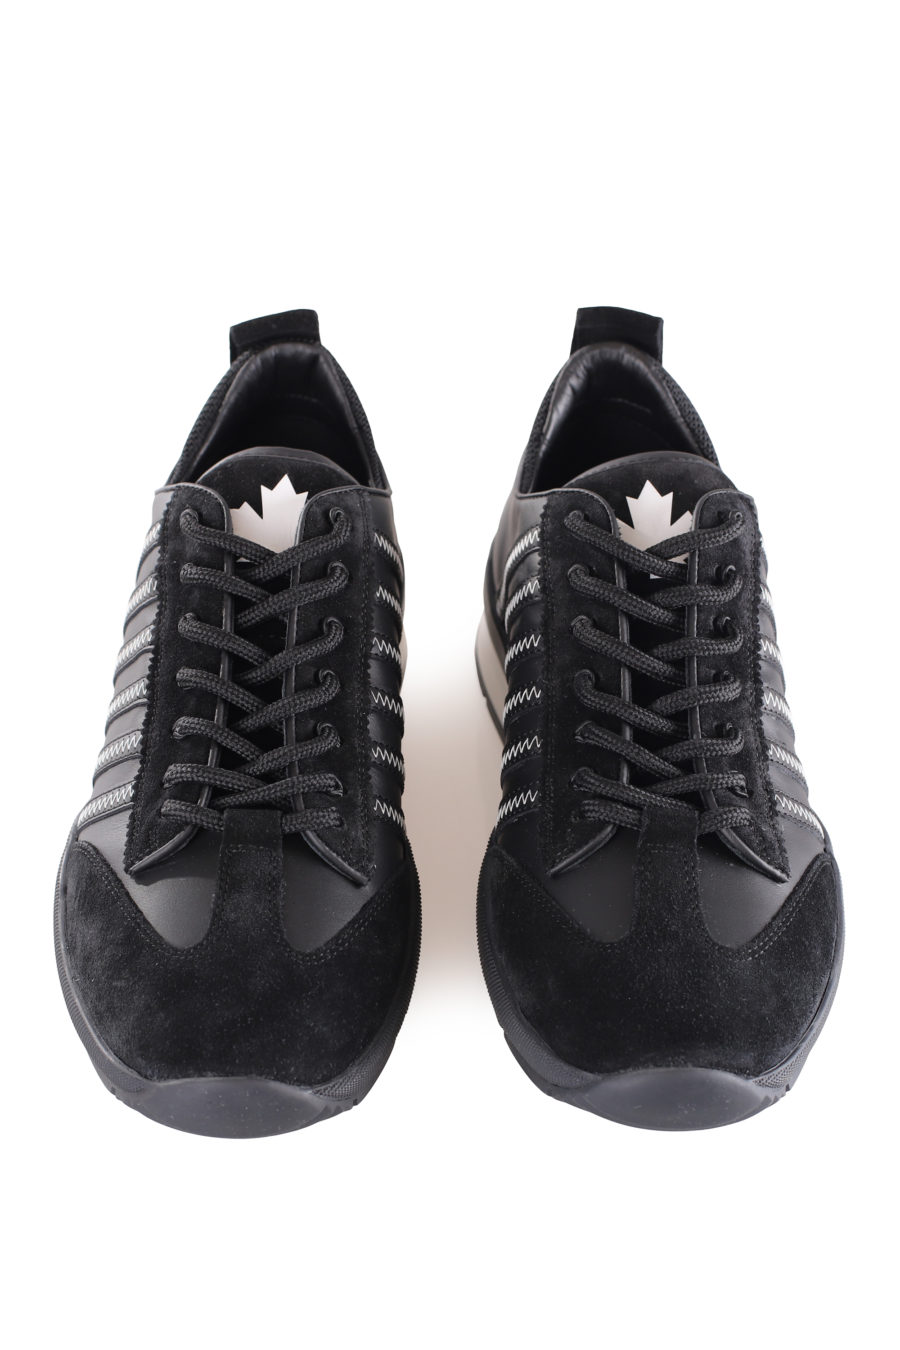 Zapatillas negras con lineas negras y logo blanco pequeño - IMG 9603